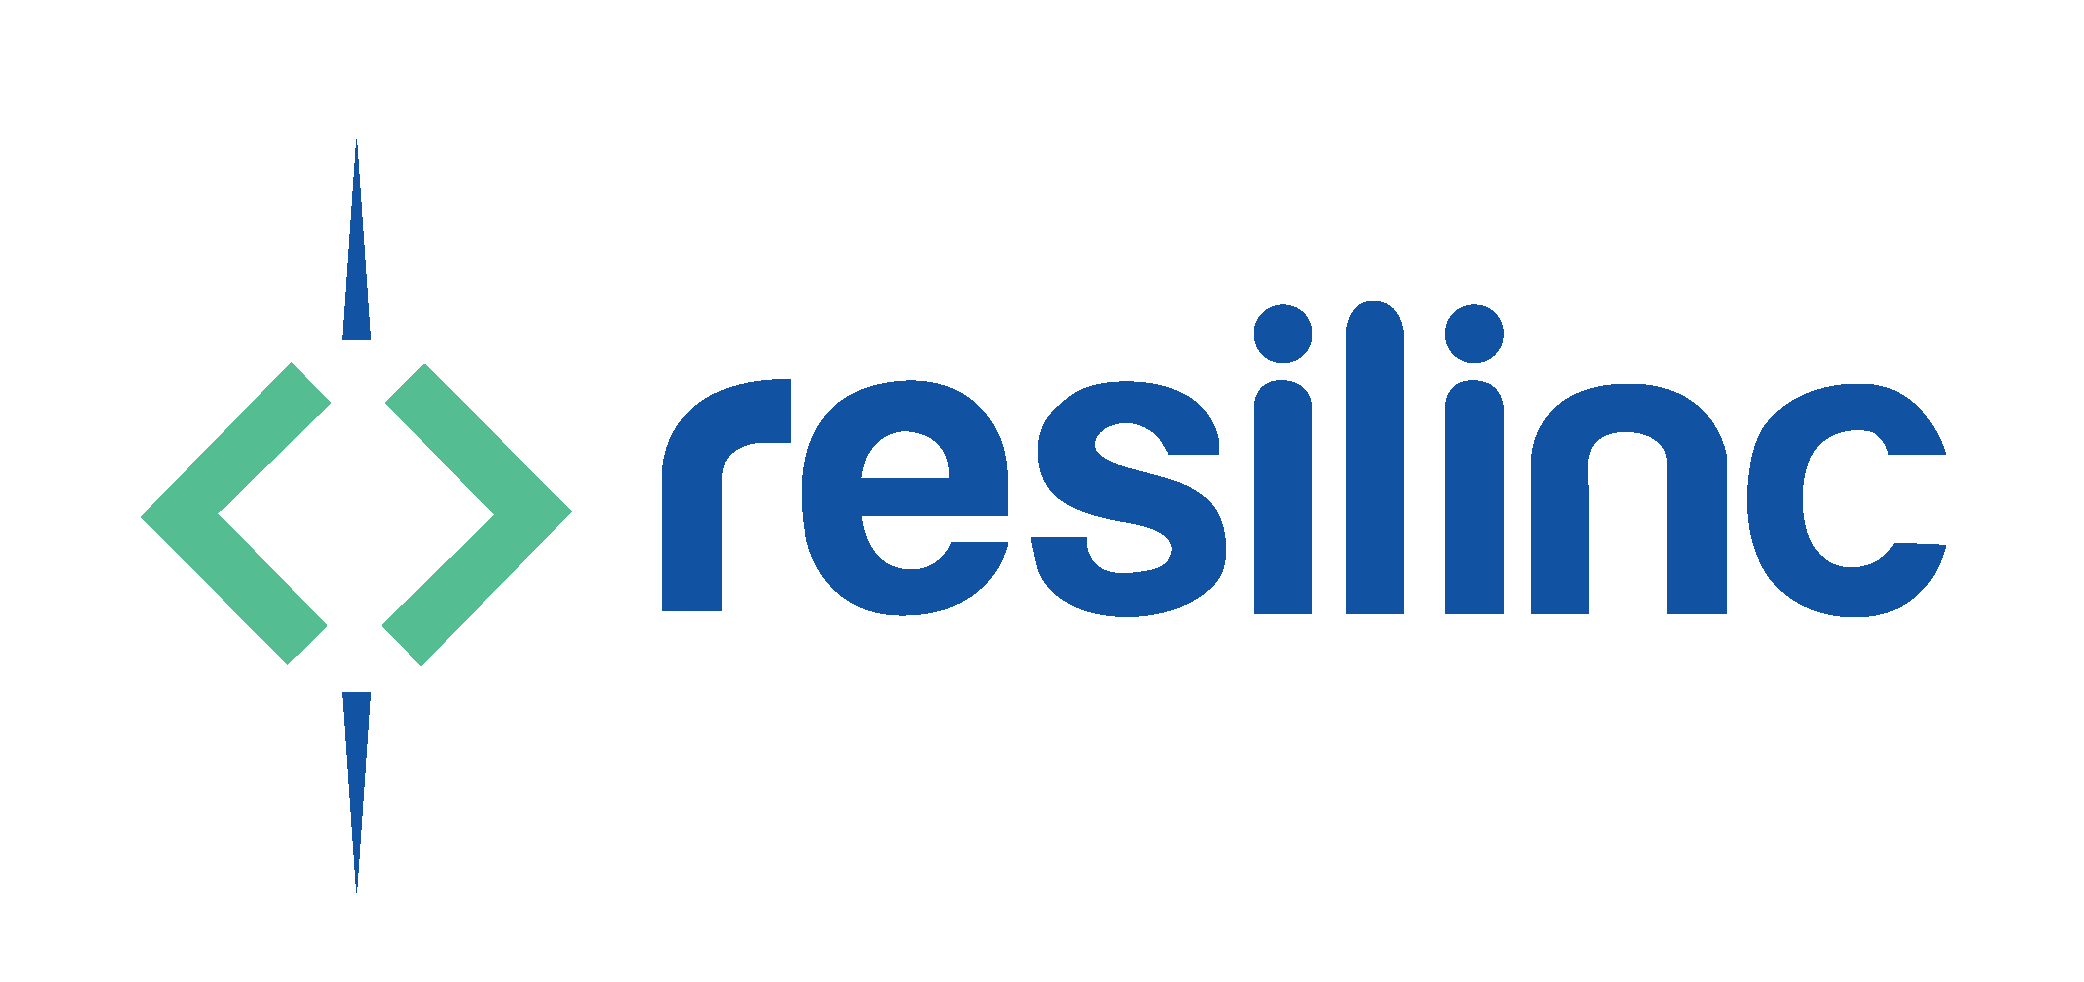 Resilinc Named “Risk